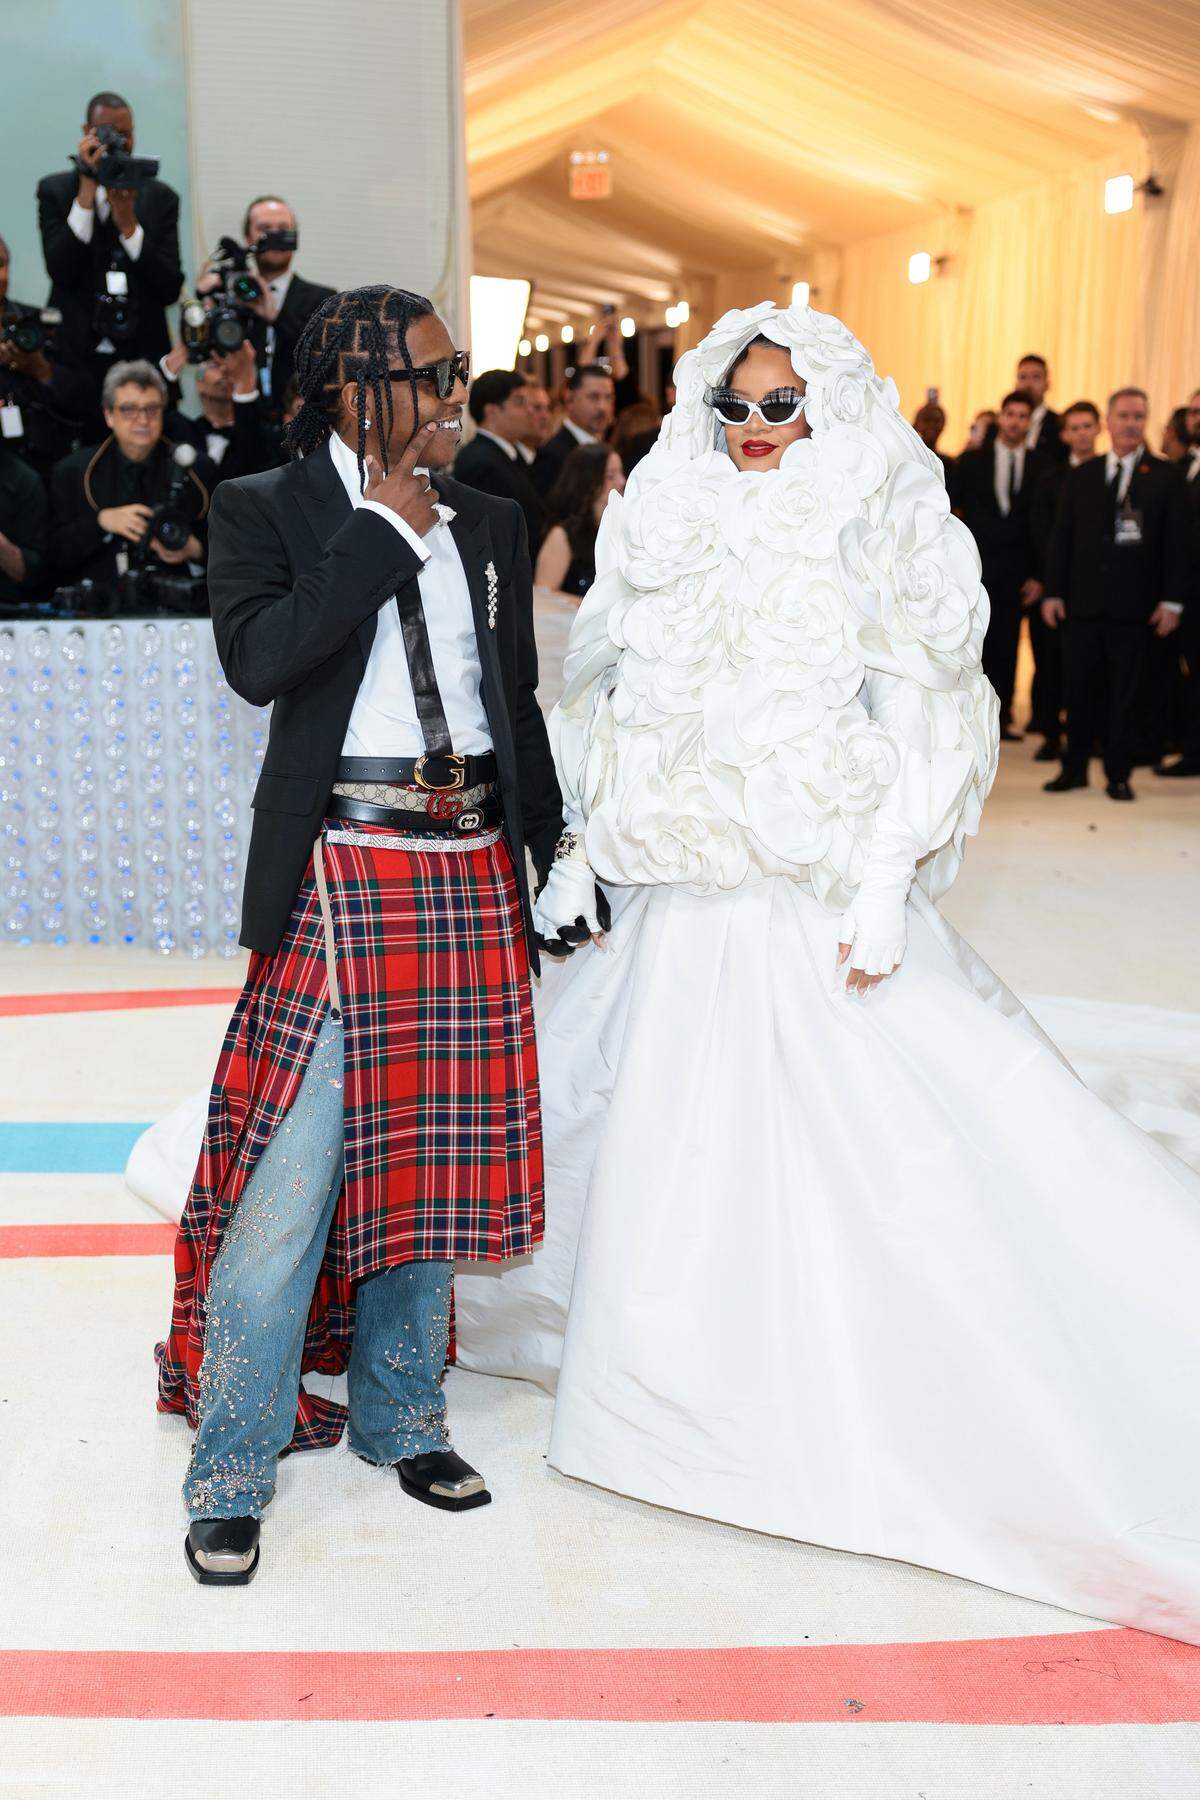 Einer der wohl ersehntesten Auftritte: Rihanna kam in Begleitung ihres Verlobten ASAP Rocky, als modische Version einer Hochzeitstorte. Vielleicht ist es bald so weit?